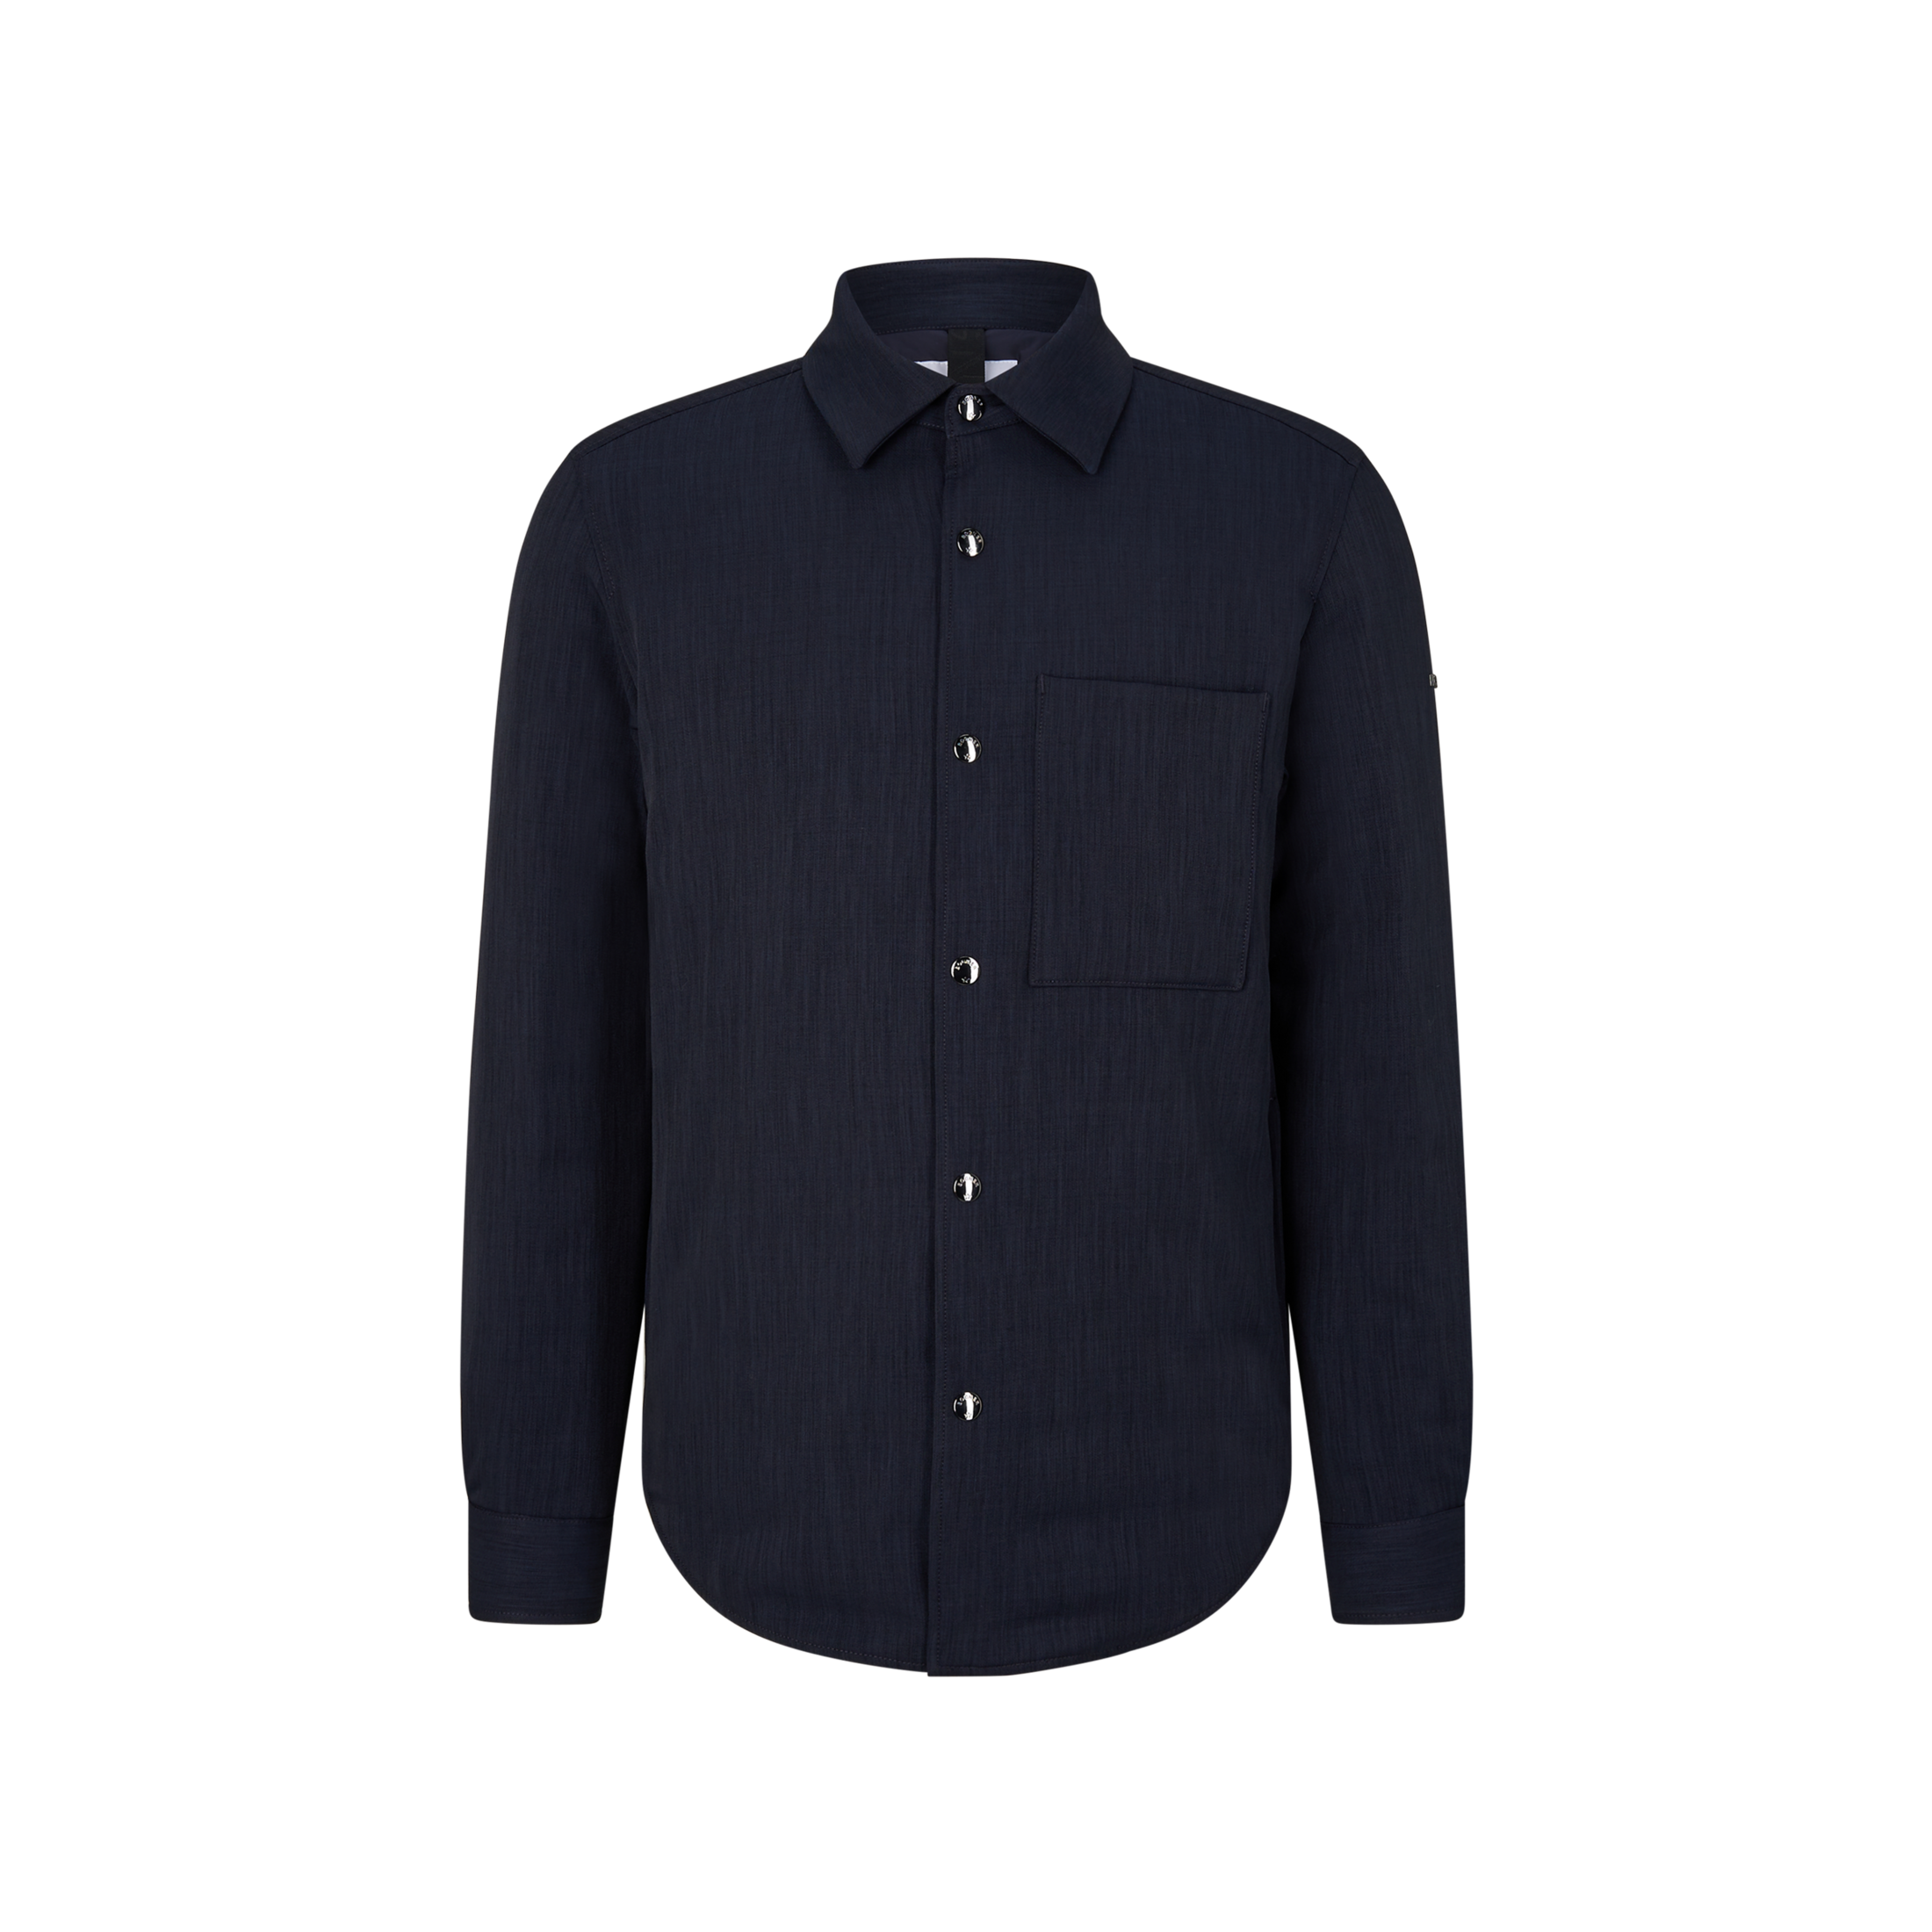 BOGNER Olli Shirt jacket for men - Navy blue - 46